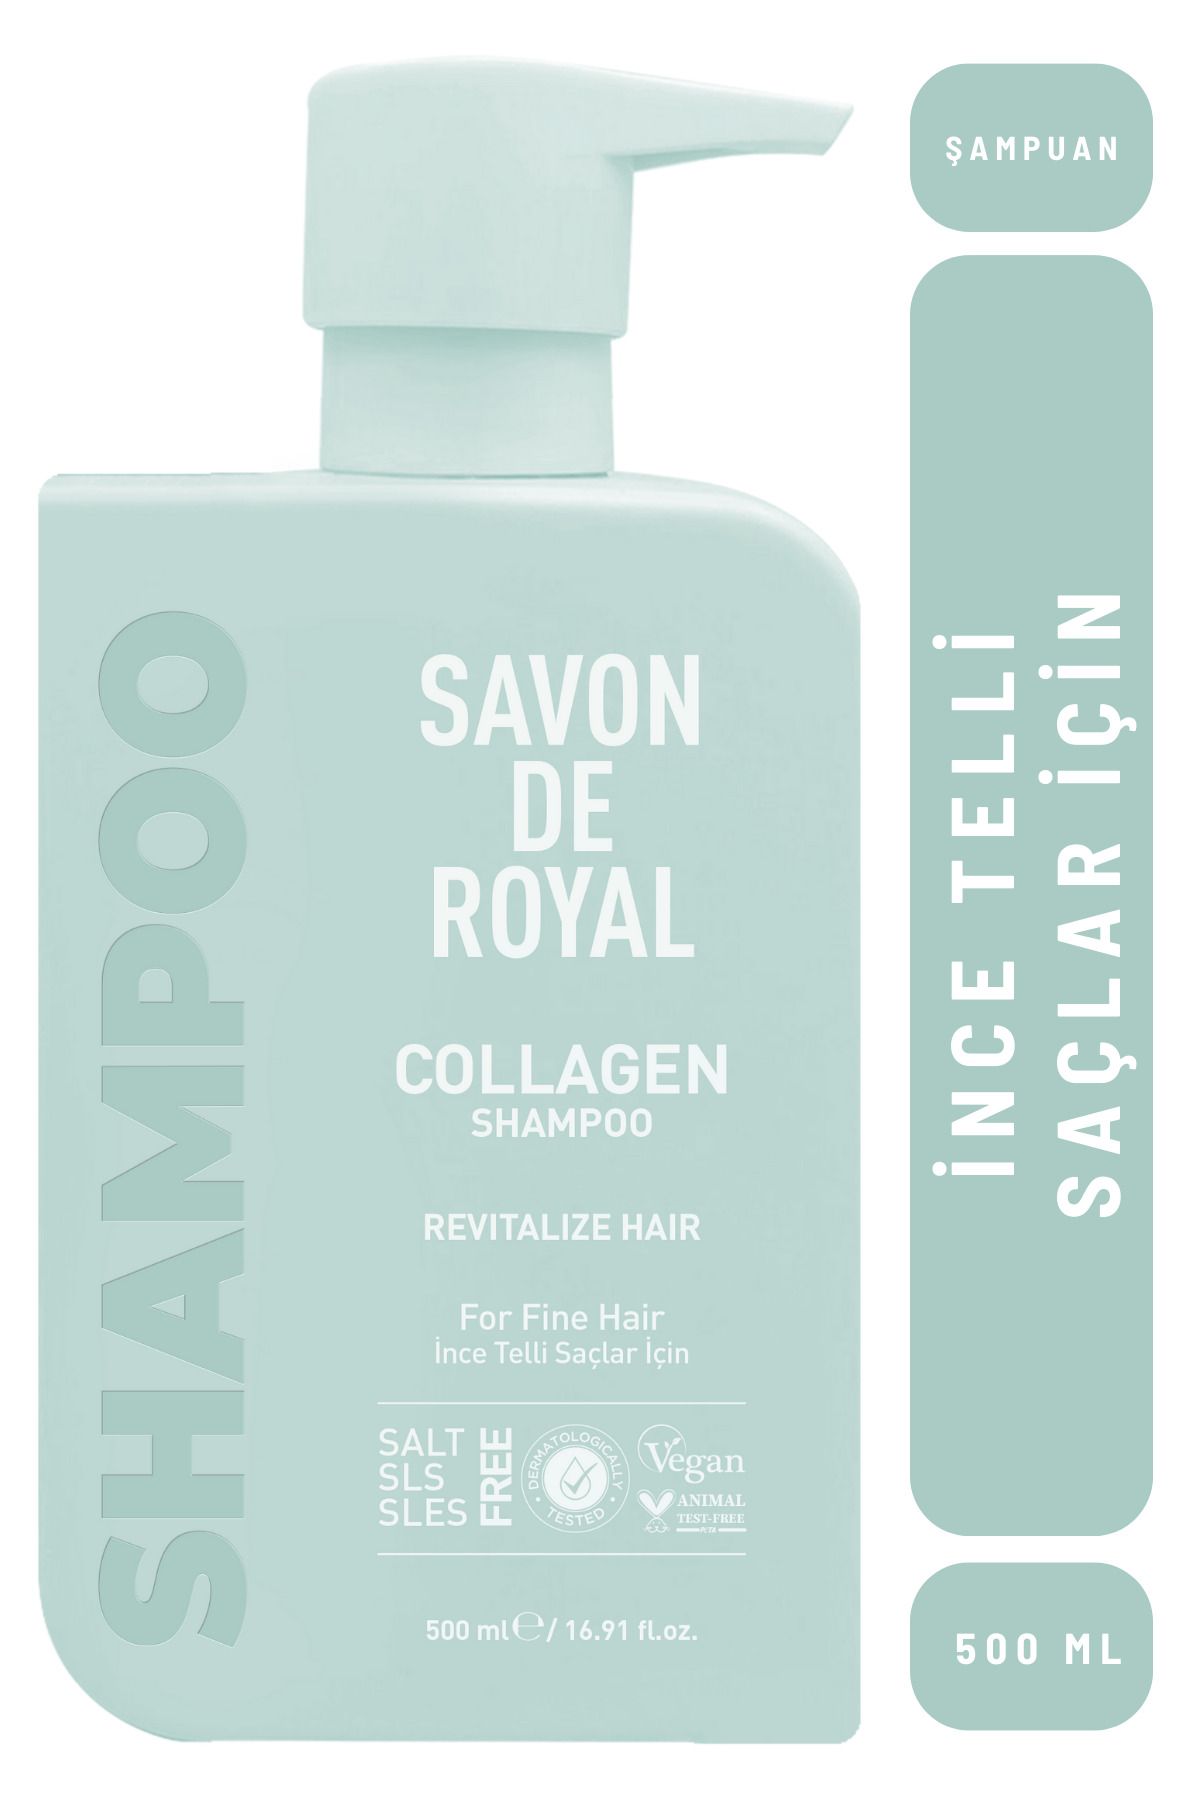 Savon de Royal - Kolajen İçeren - İnce Telli Saçlar İçin Canlandırıcı Etkili Şampuan 500 ml